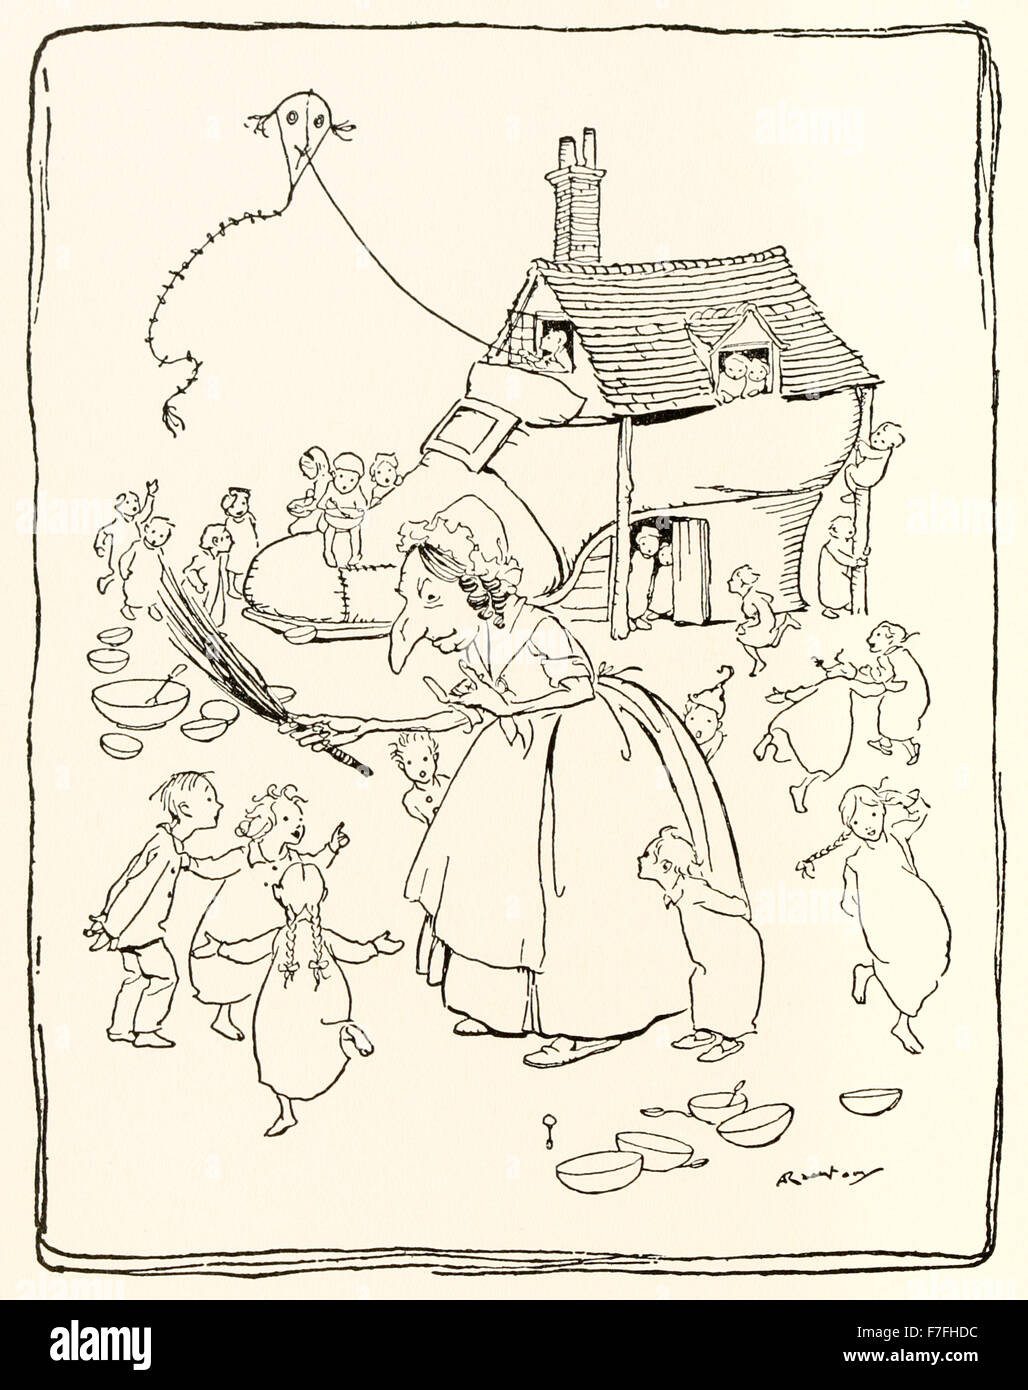 "Es war eine alte Frau, die in einem Schuh gelebt" von "Mother Goose - die alte Kinderreime" Illustration von Arthur Rackham (1867-1939). Siehe Beschreibung für mehr Informationen. Stockfoto